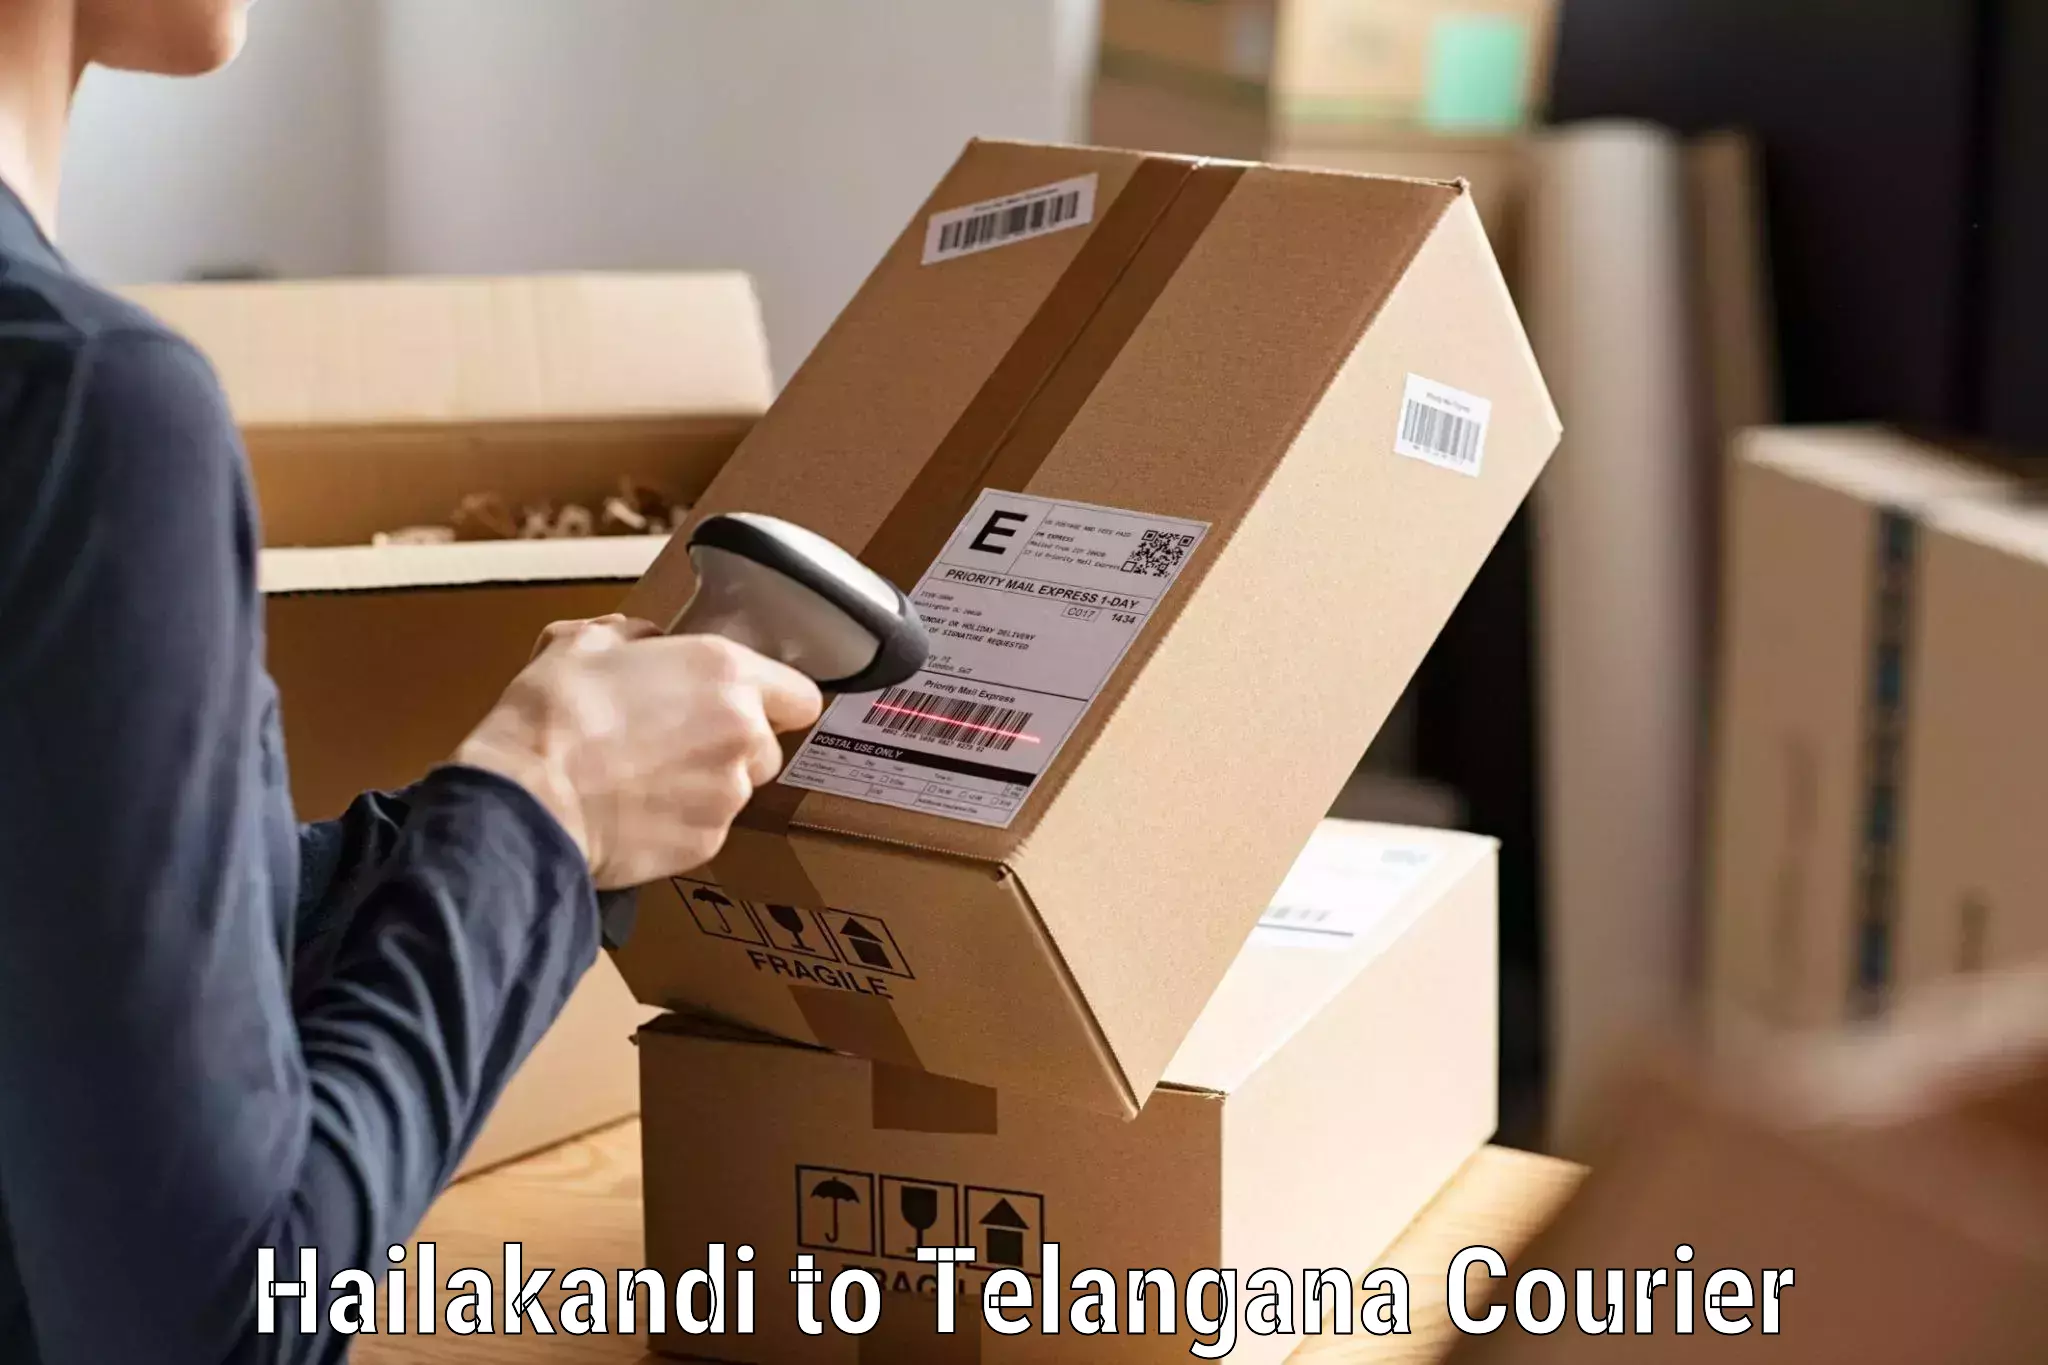 Courier service comparison Hailakandi to Sangareddy